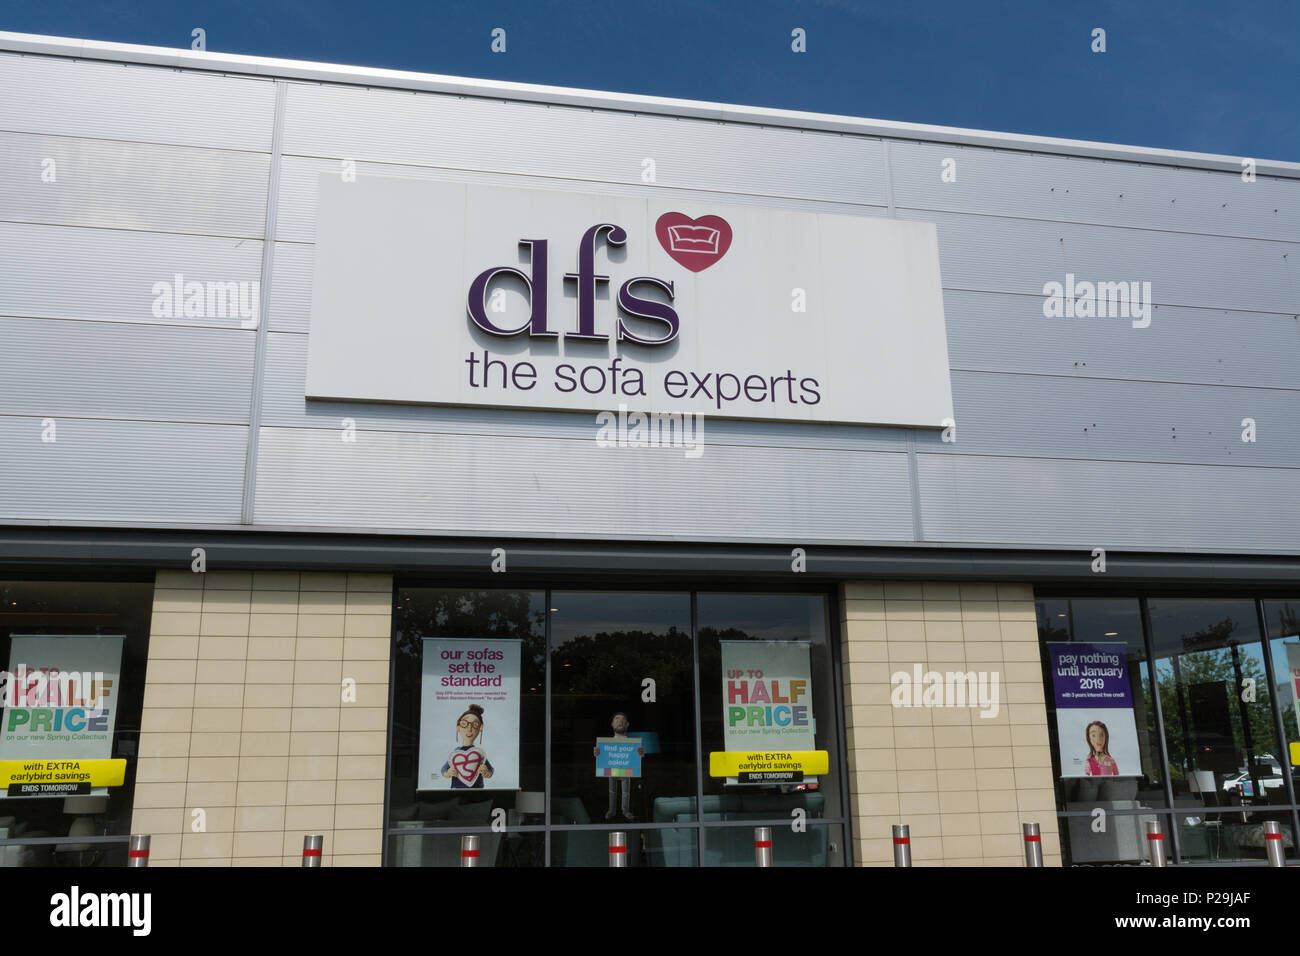 DFS, le canapé-experts, l'extérieur du magasin avec signe, UK Banque D'Images